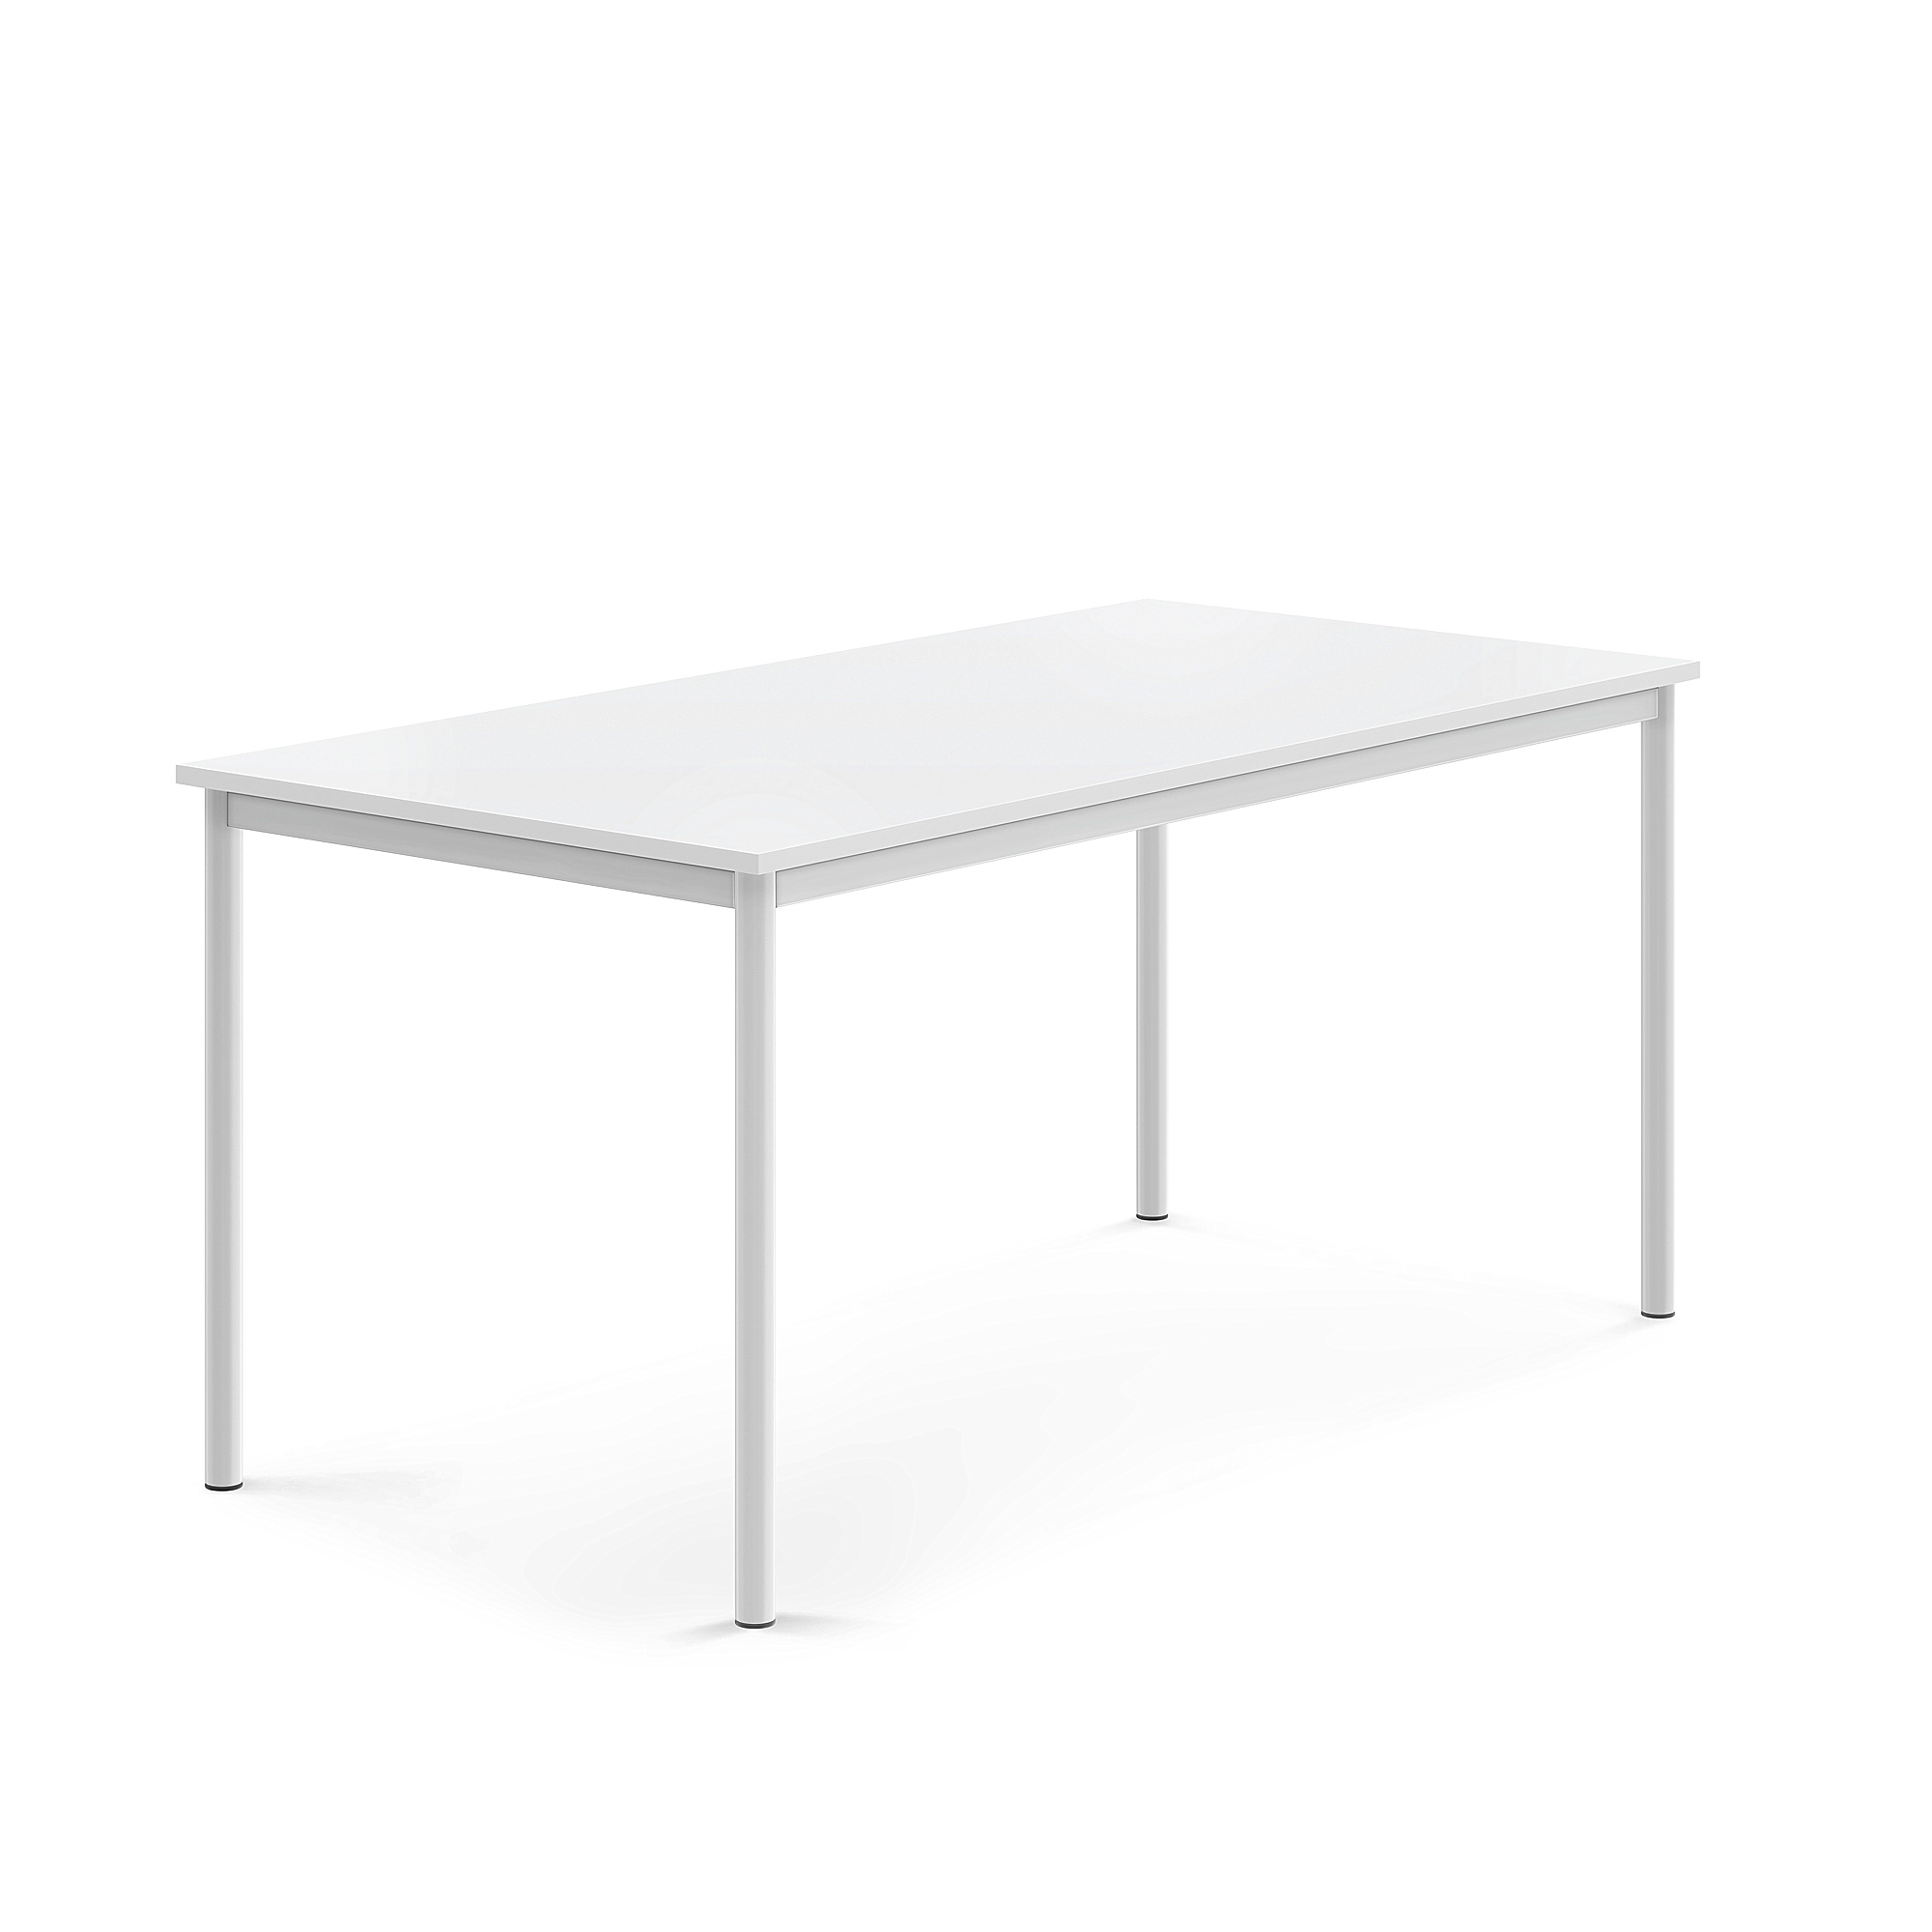 Stůl BORÅS, 1600x800x720 mm, bílé nohy, HPL deska, bílá